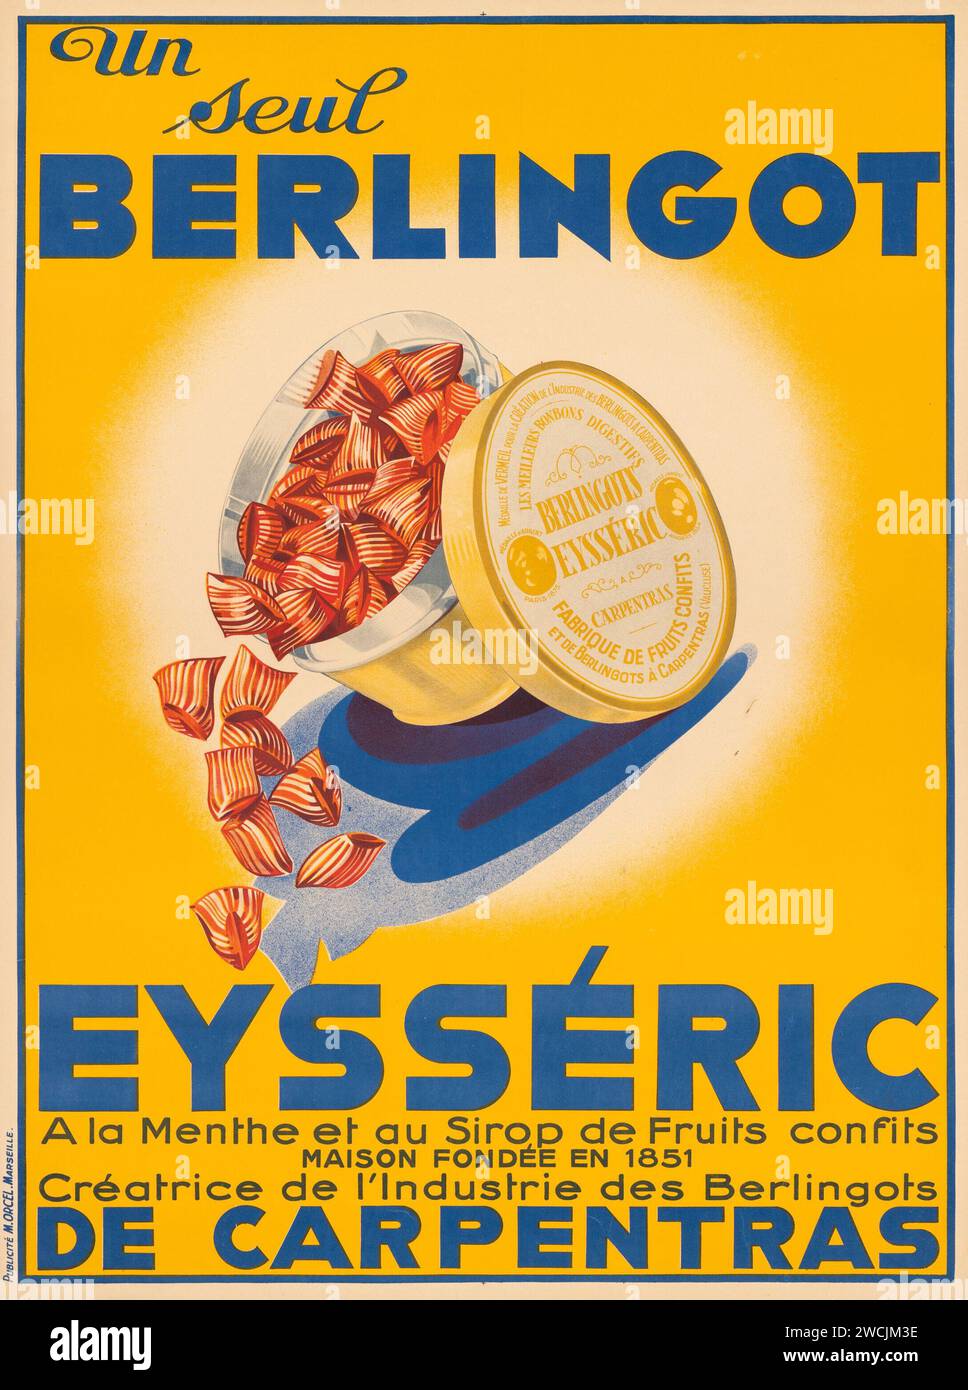 Eysséric Berlingot (c. 1930s) affiche publicitaire française. Publicité de bonbons Banque D'Images